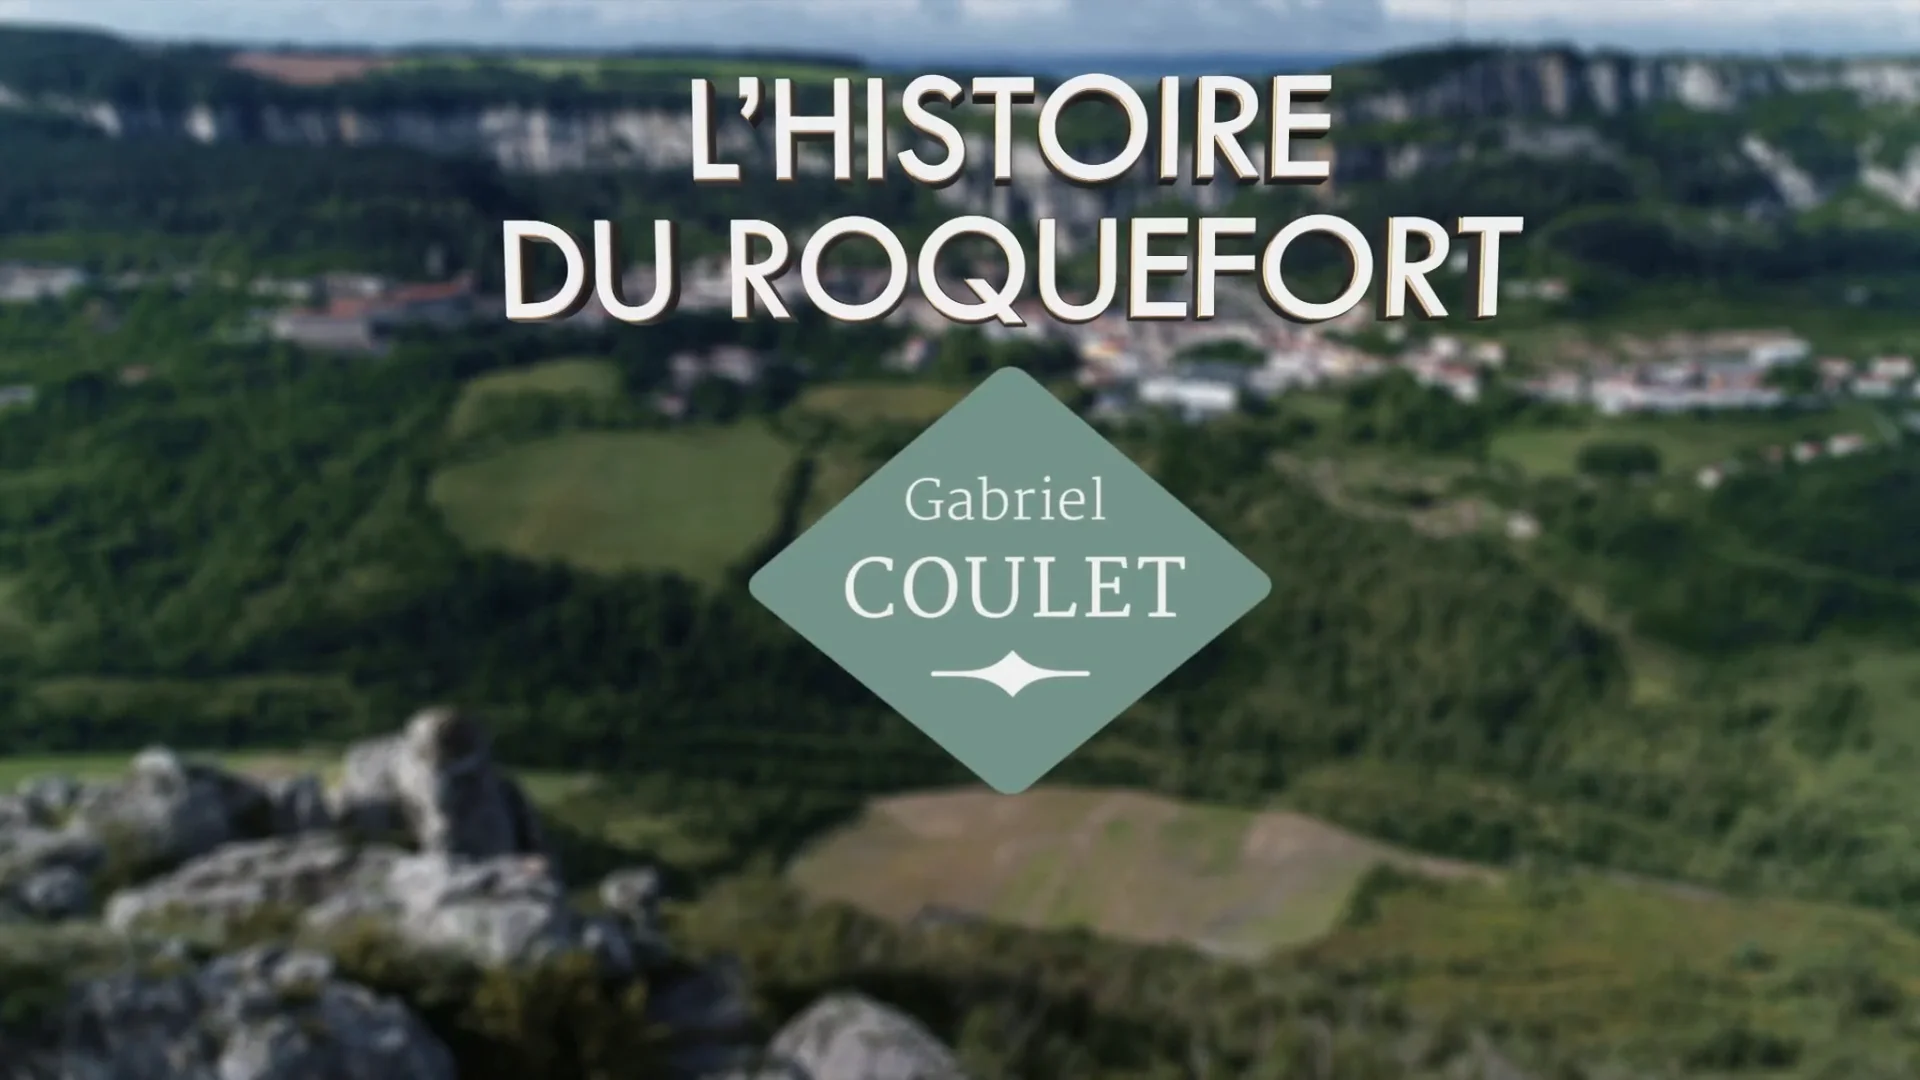 Roquefort - Maison Gabriel Coulet